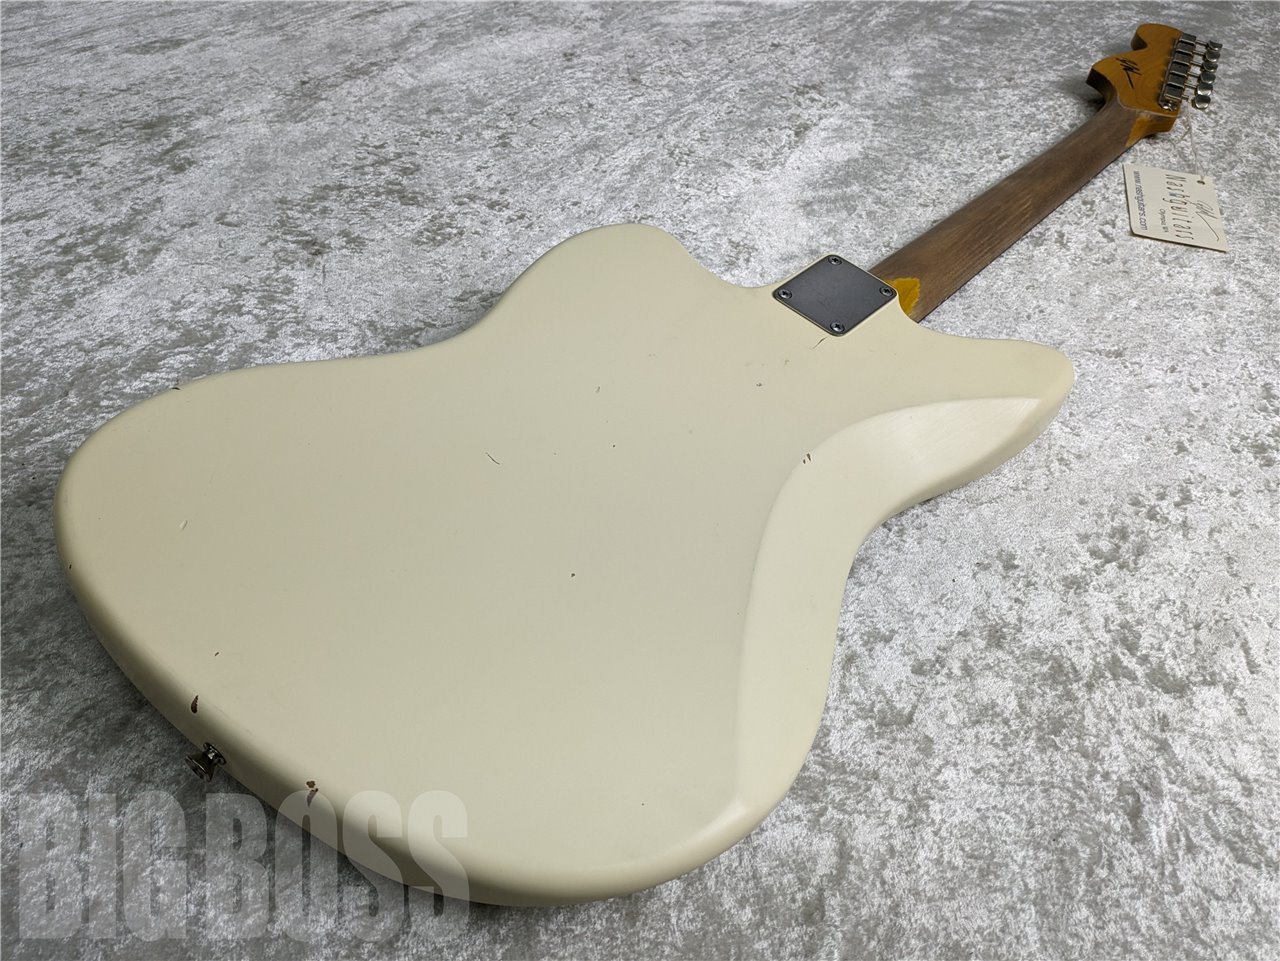 【即納可能】Nash Guitars(ナッシュギターズ) JM63 / Olympic White お茶の水駅前店・別館